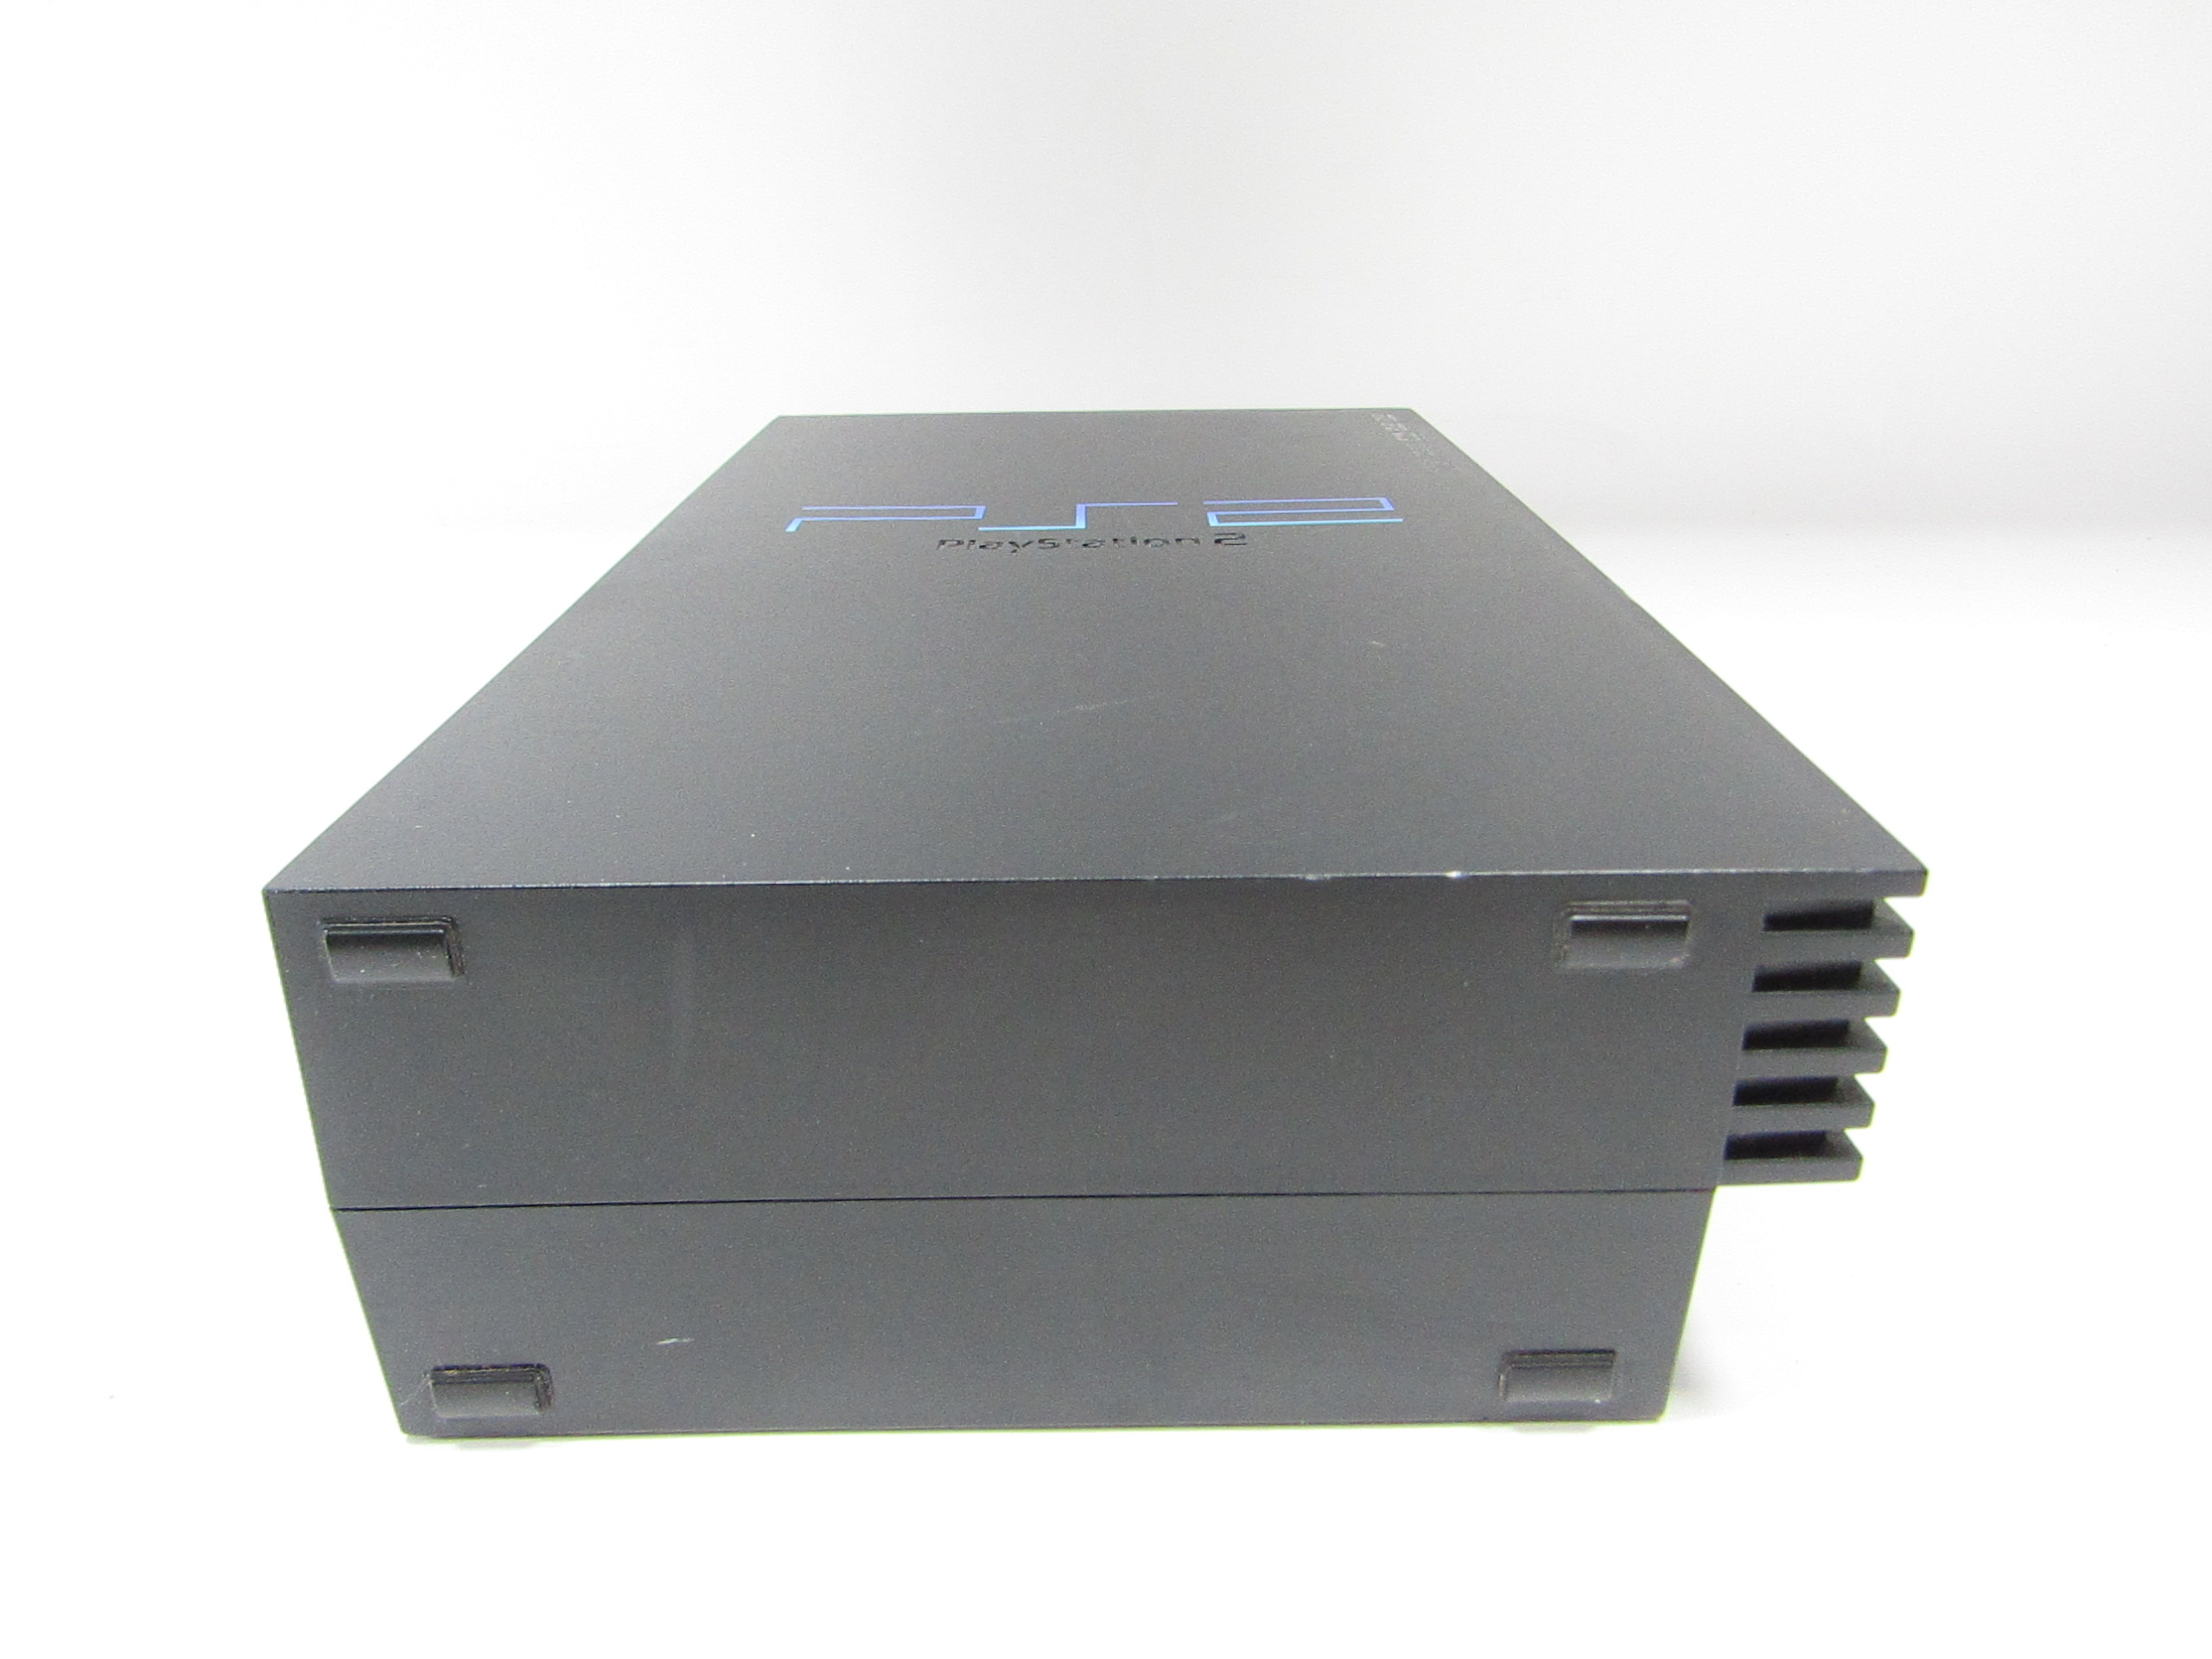 CONSOLA PLAYSTATION 2 SISTEMA PS2 SCPH-39001